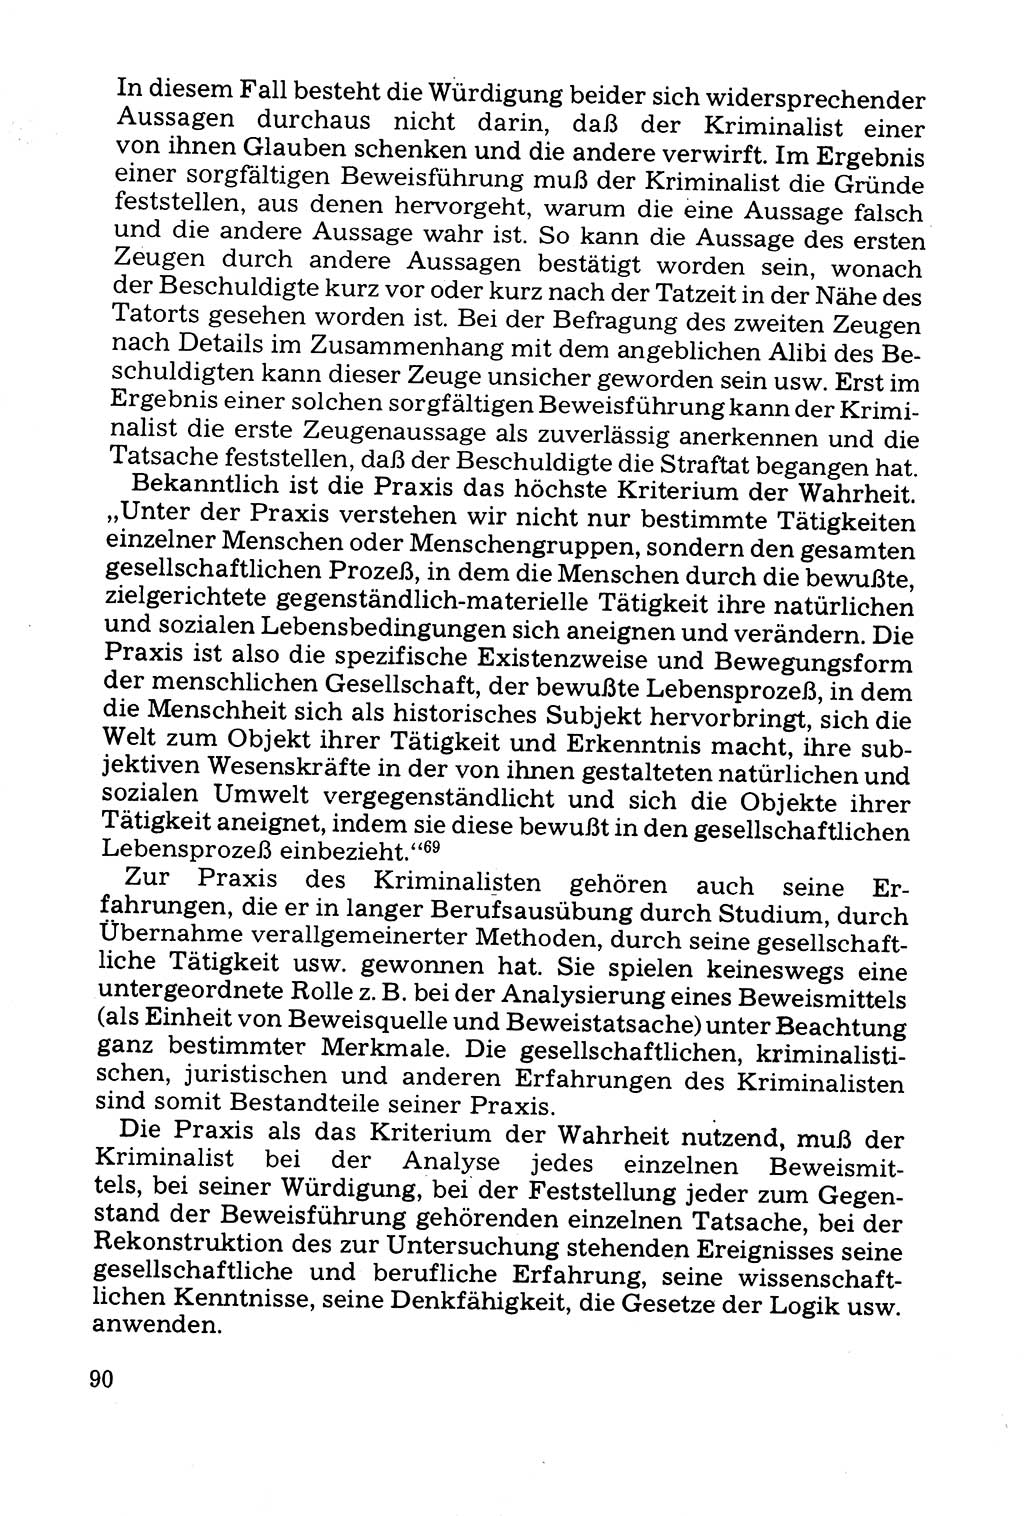 Grundfragen der Beweisführung im Ermittlungsverfahren [Deutsche Demokratische Republik (DDR)] 1980, Seite 90 (Bws.-Fhrg. EV DDR 1980, S. 90)